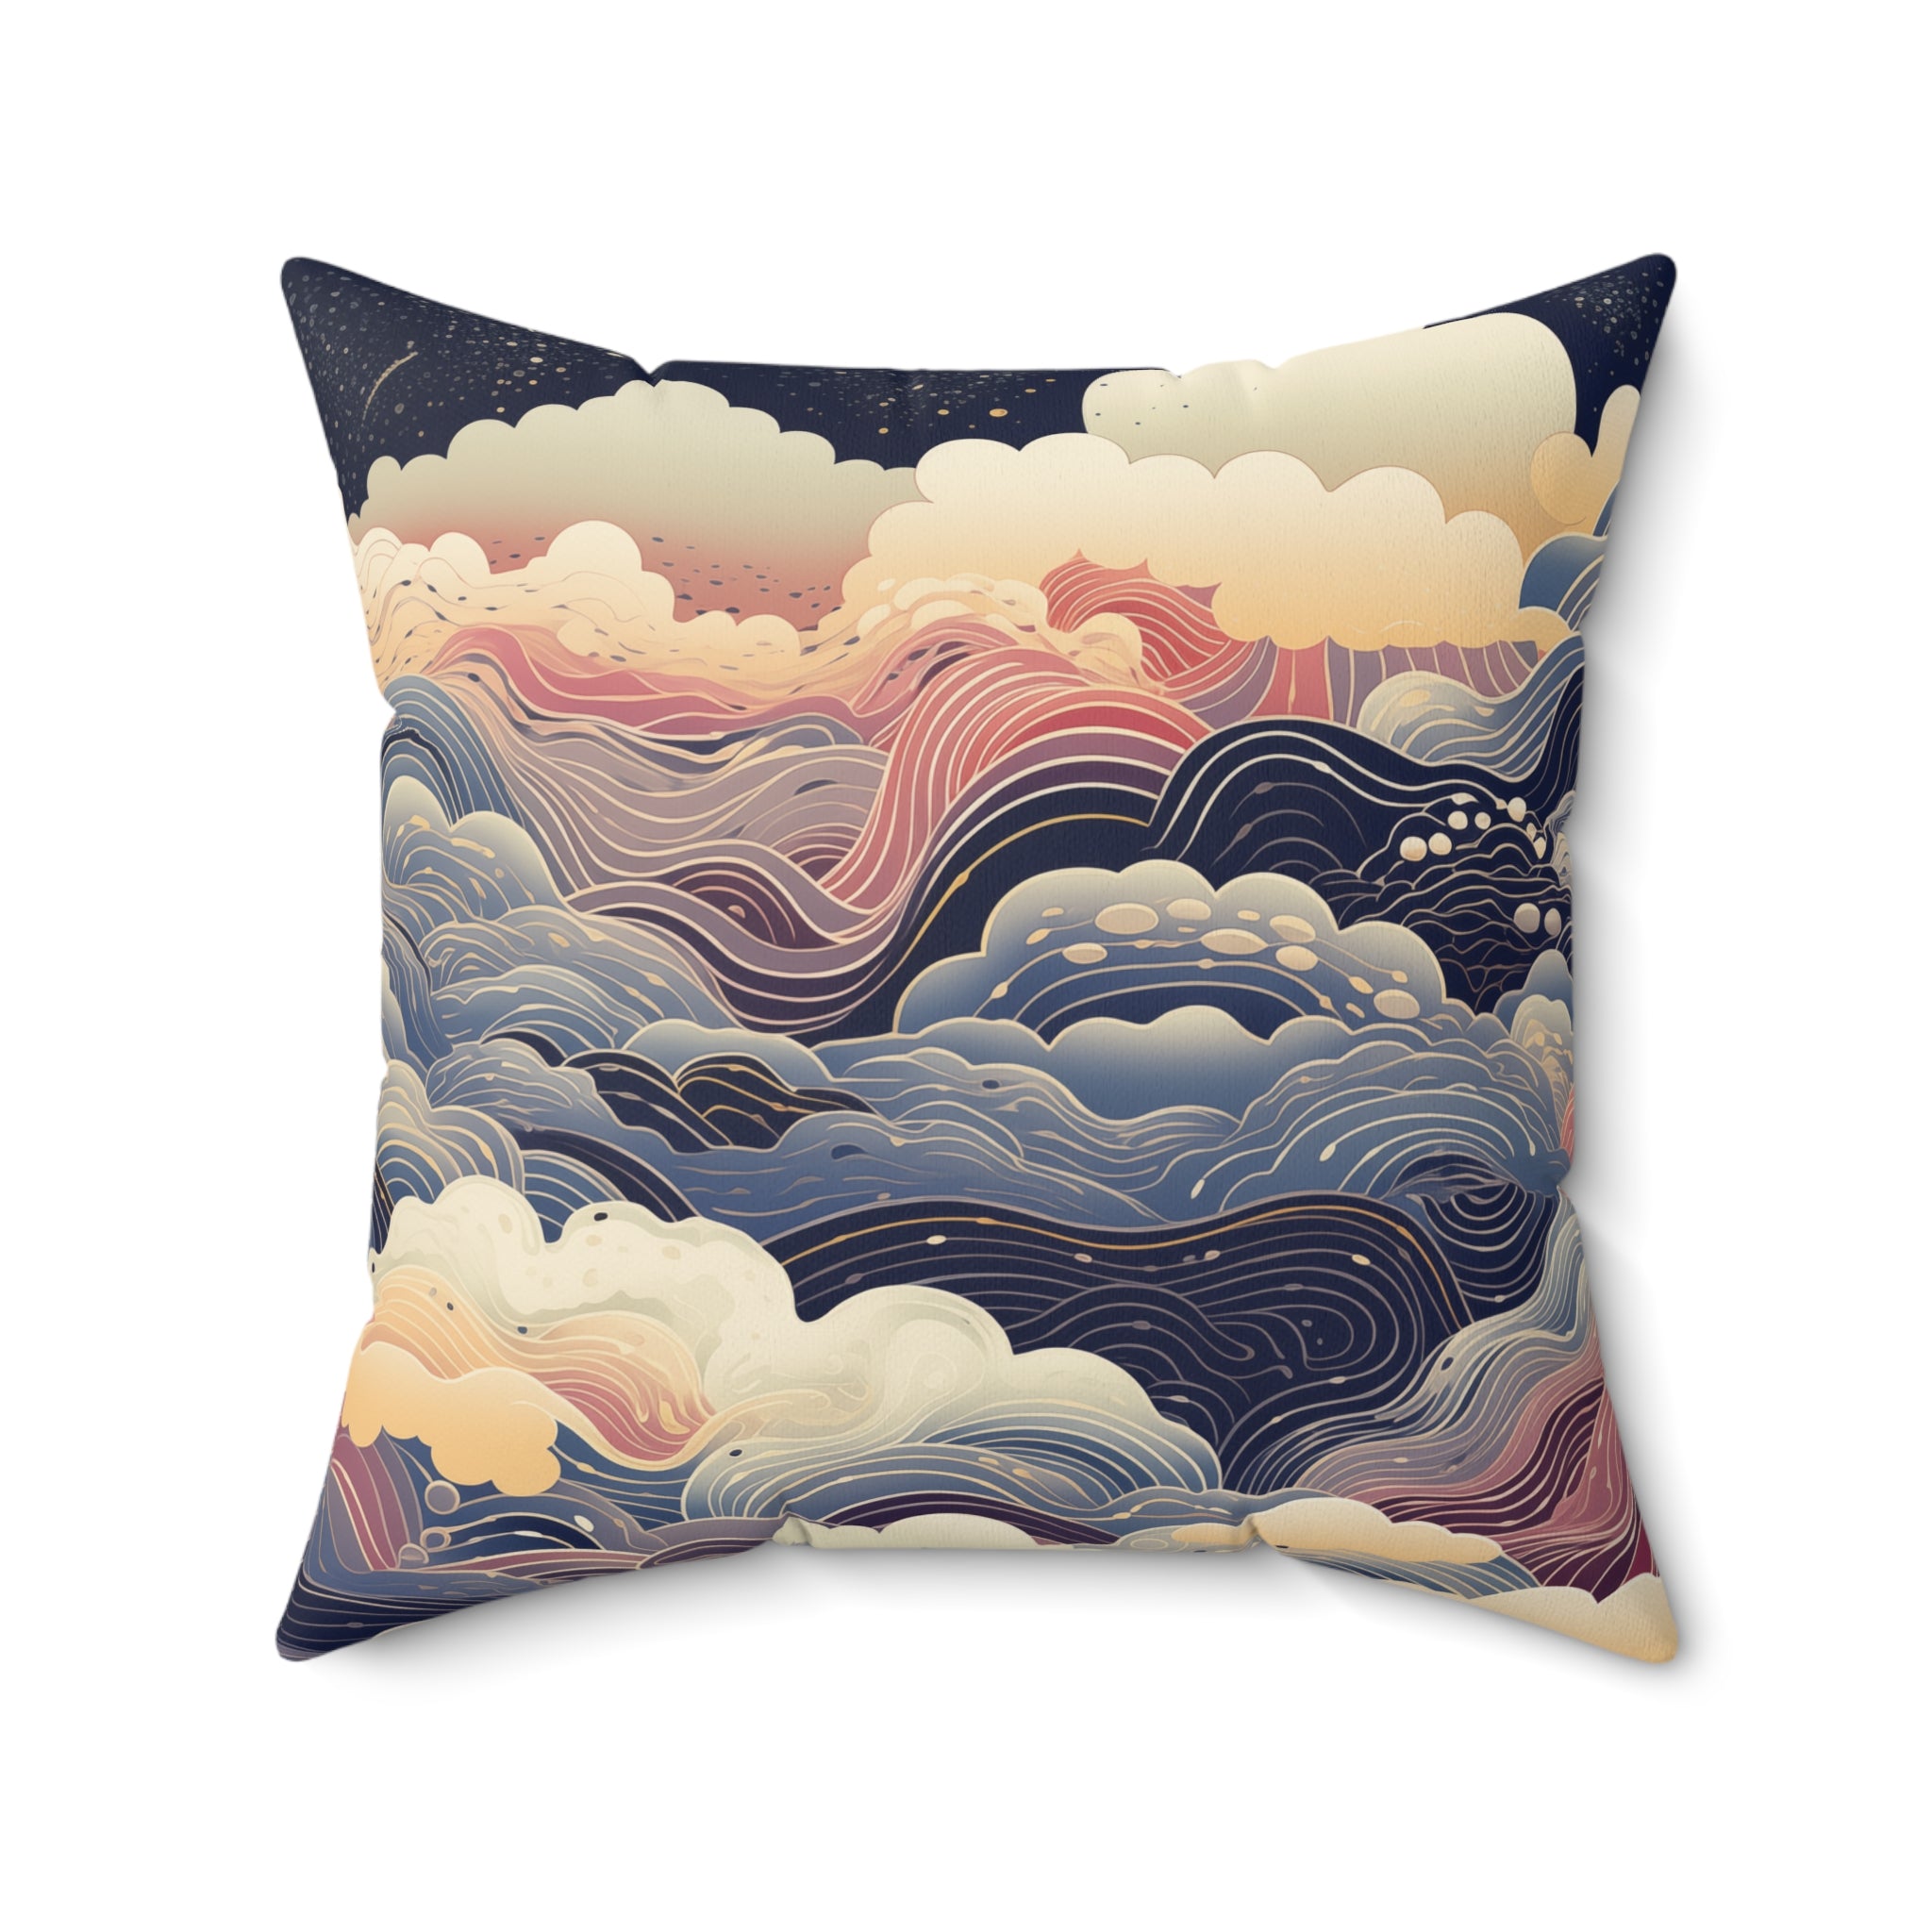 Lunar Landscapes - Square Pillow